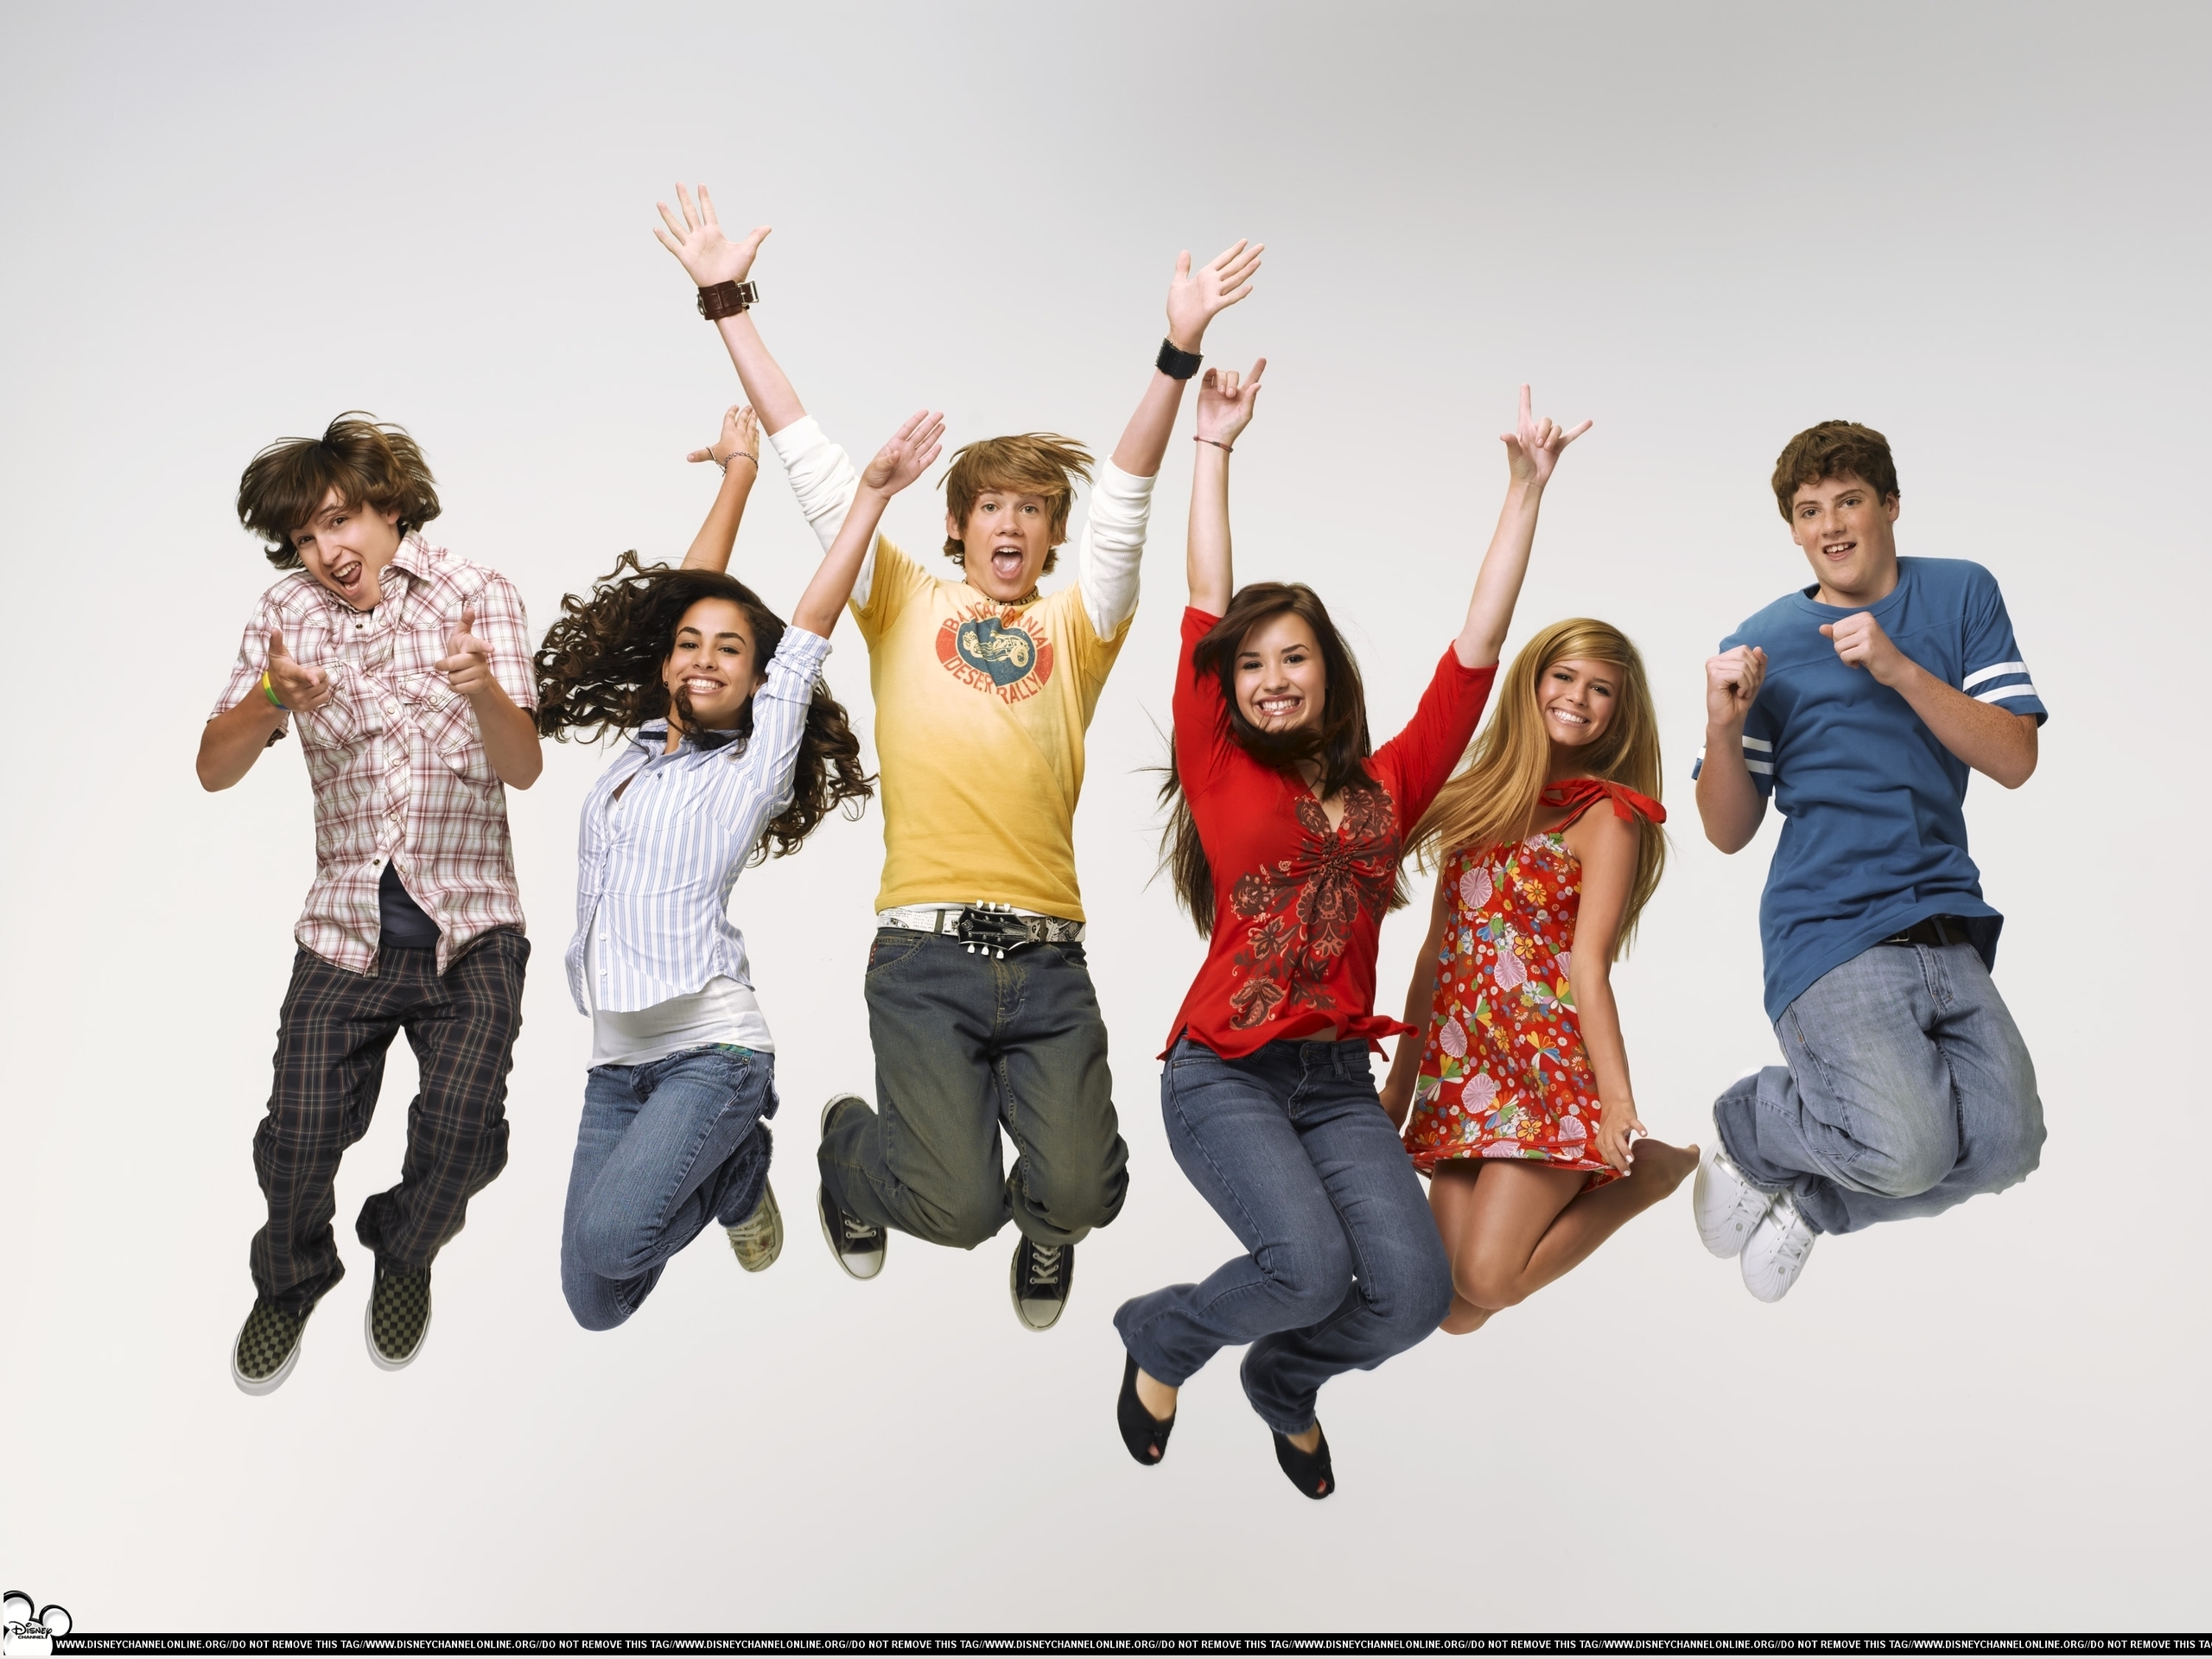 As the Bell Rings Season 1 Promos - Disney Channel Photo (2208648) - Fanpop2560 x 1920